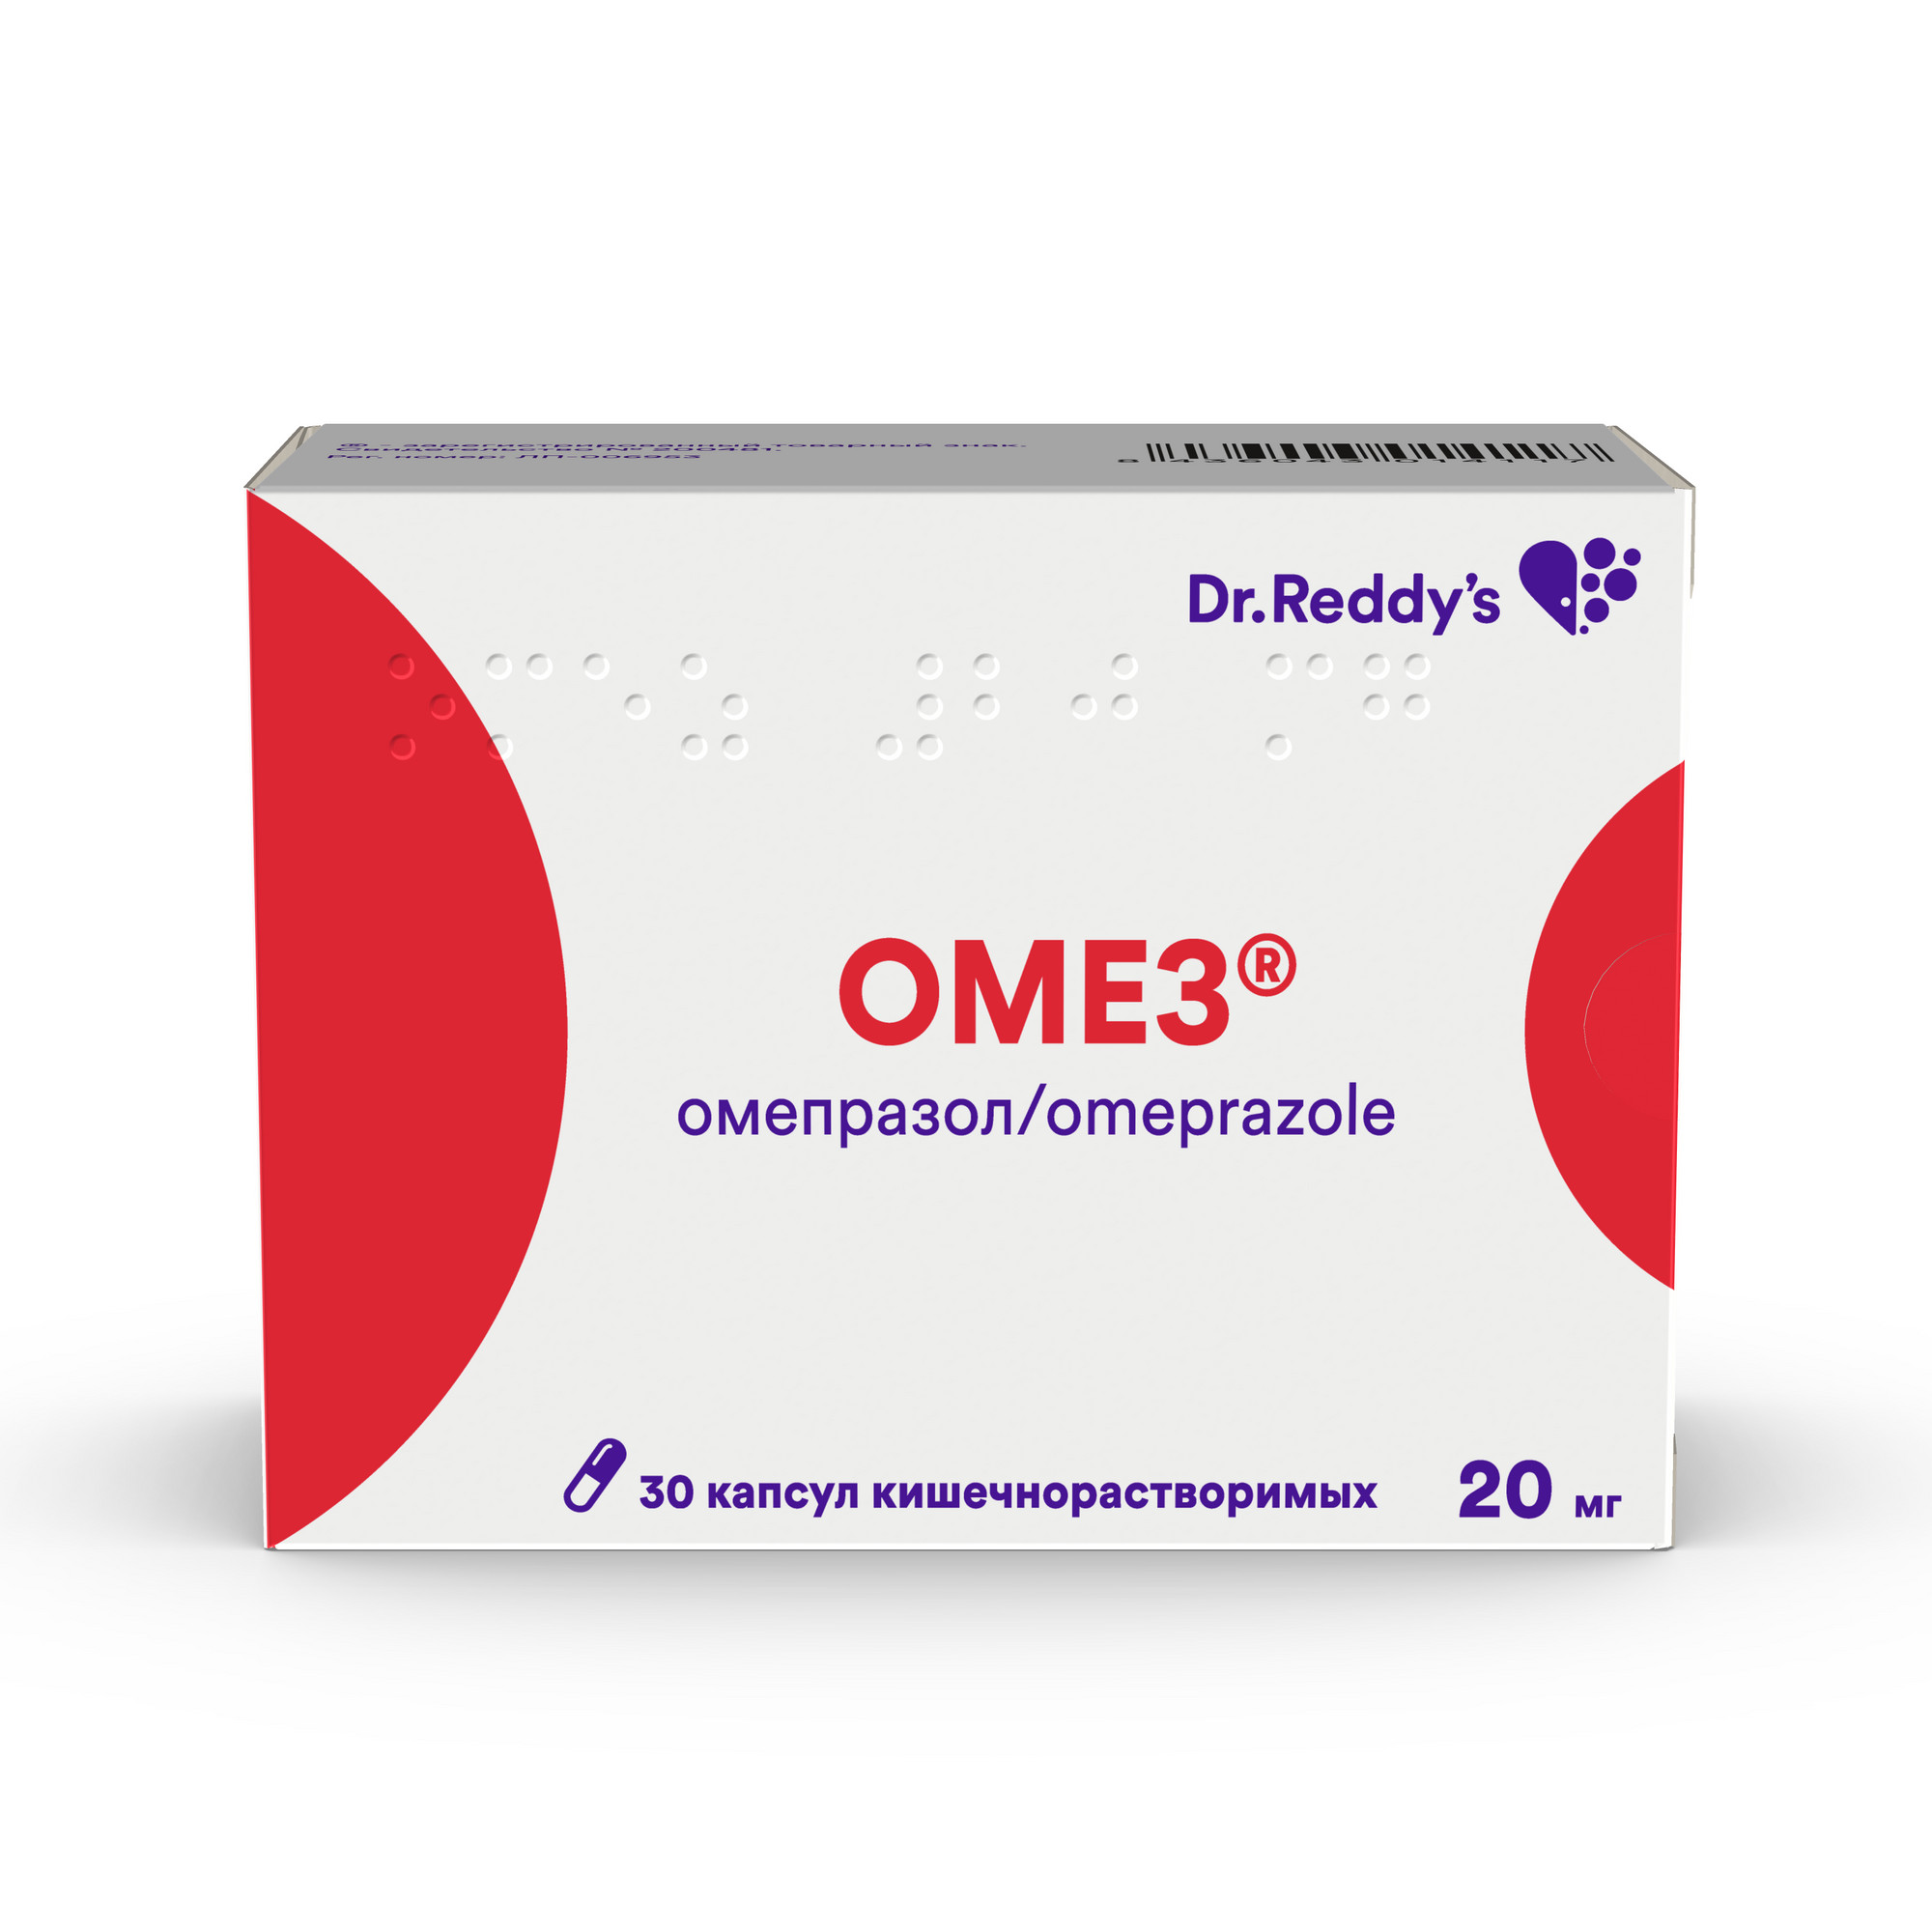 Препараты с действующим веществом Омепразол, аналоги лекарств по МНН Омепразол, цена в интернет аптеке Здравсити